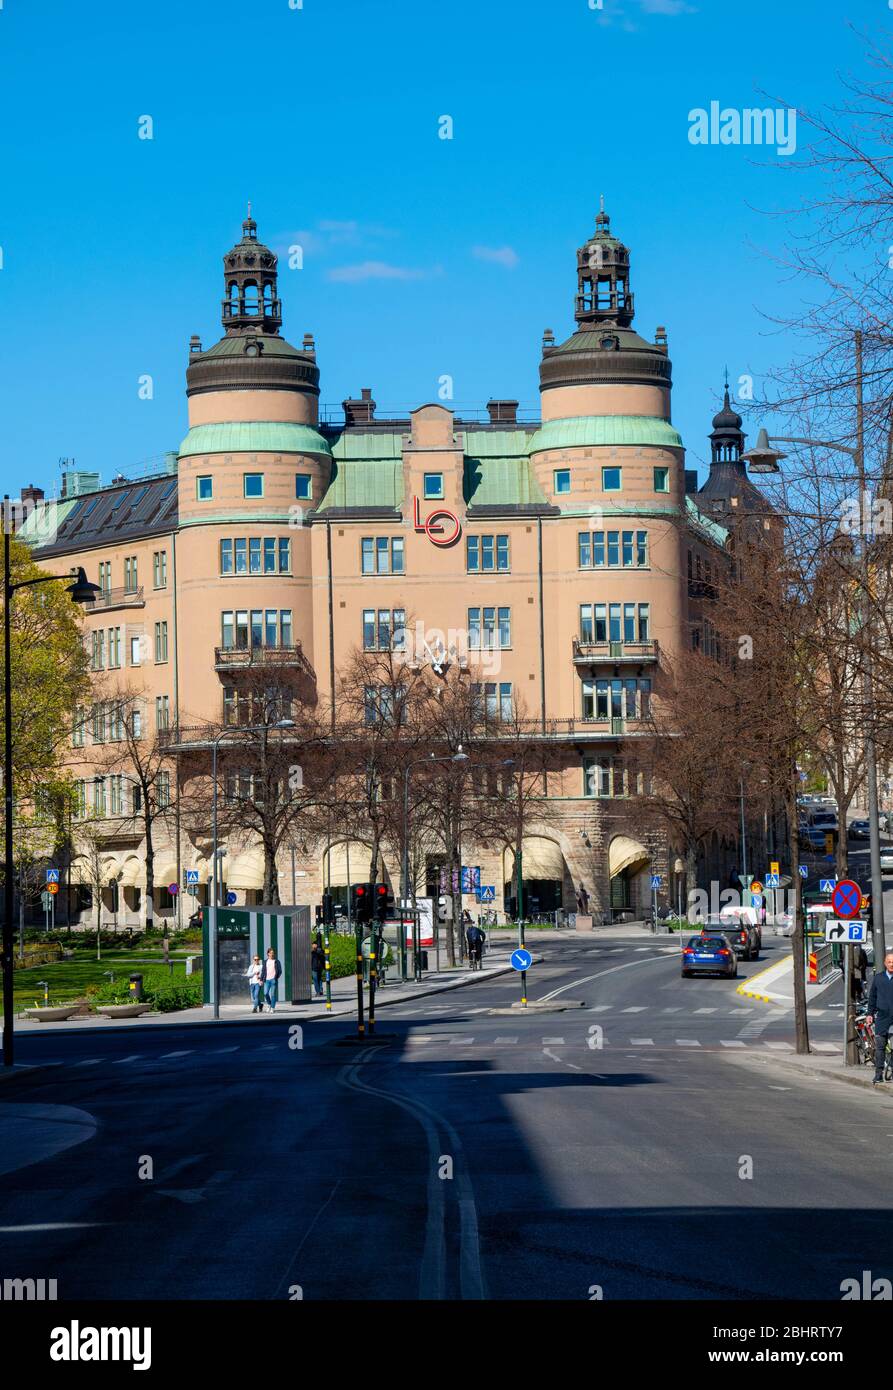 Verkehr vor dem berühmten Gebäude, bekannt als "LO-borgen" im Zentrum von Stockholm. Seit 1926 Sitz des schwedischen Gewerkschaftsbundes. Stockfoto